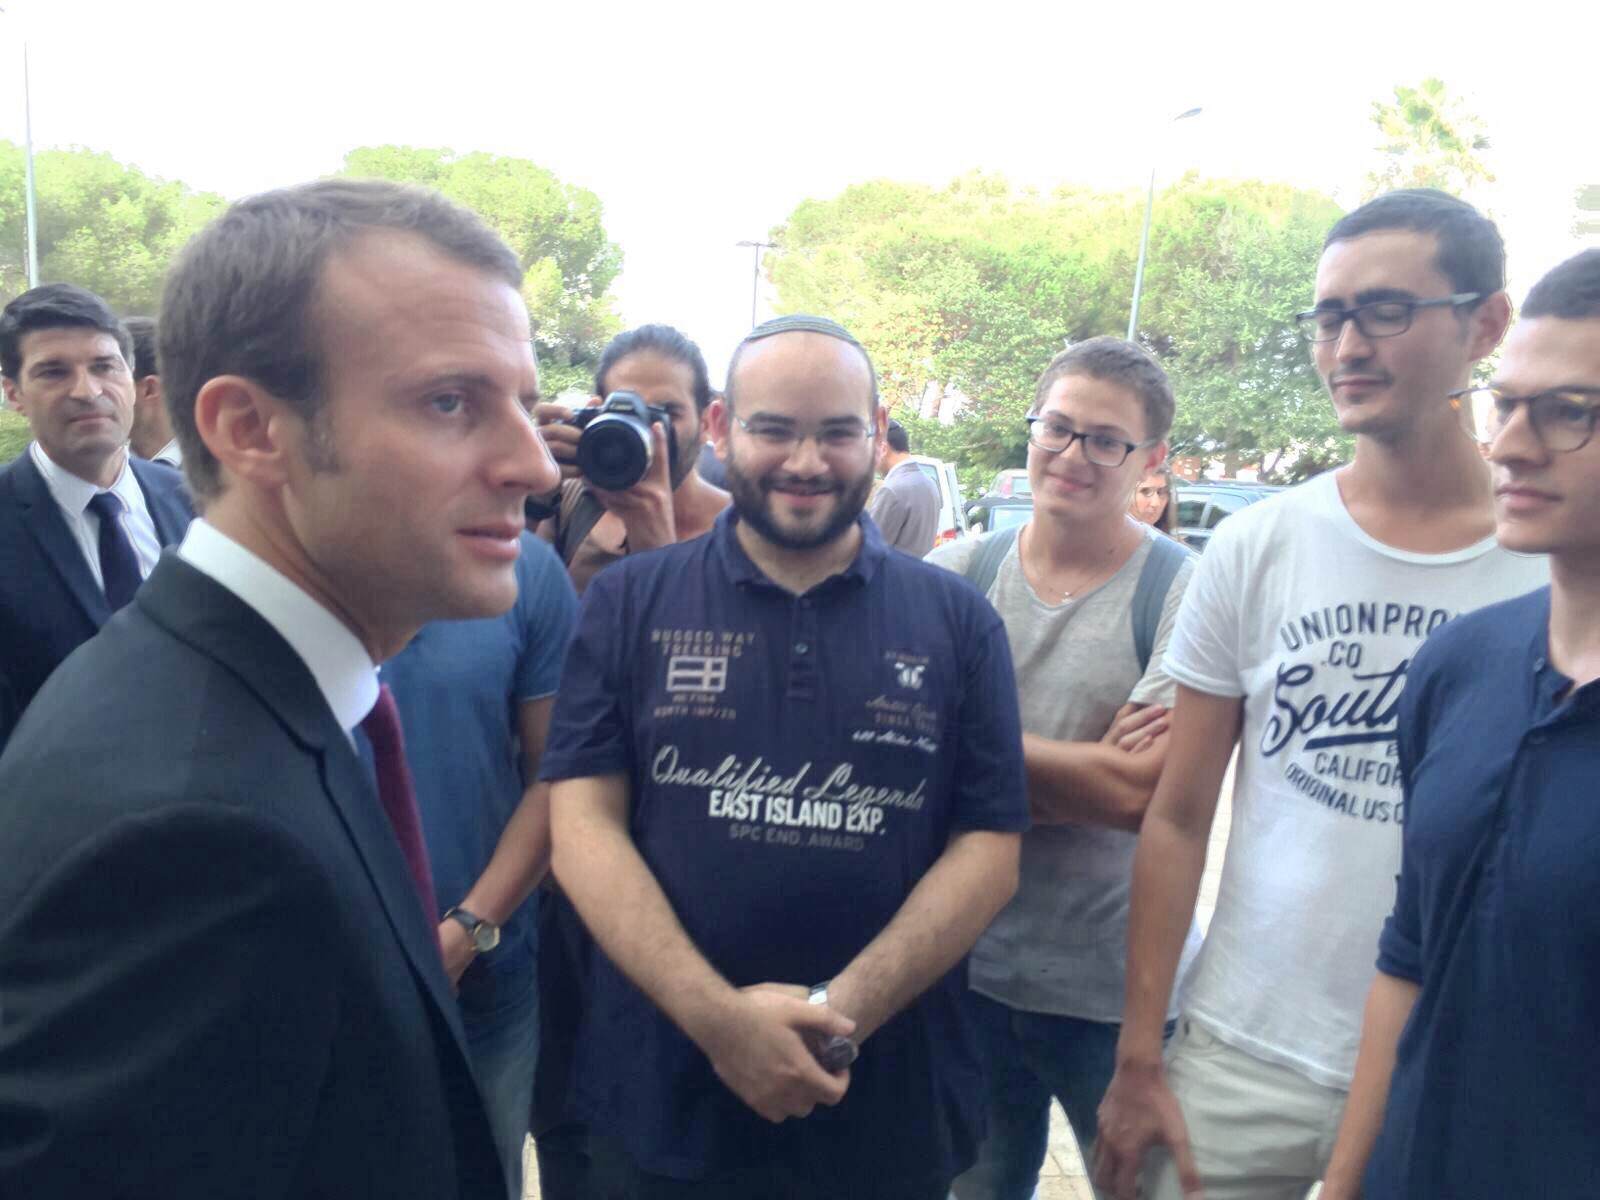 Les secrets de la visite de M Macron au Technion dévoilés par Jordan, ex de Prépa Technion